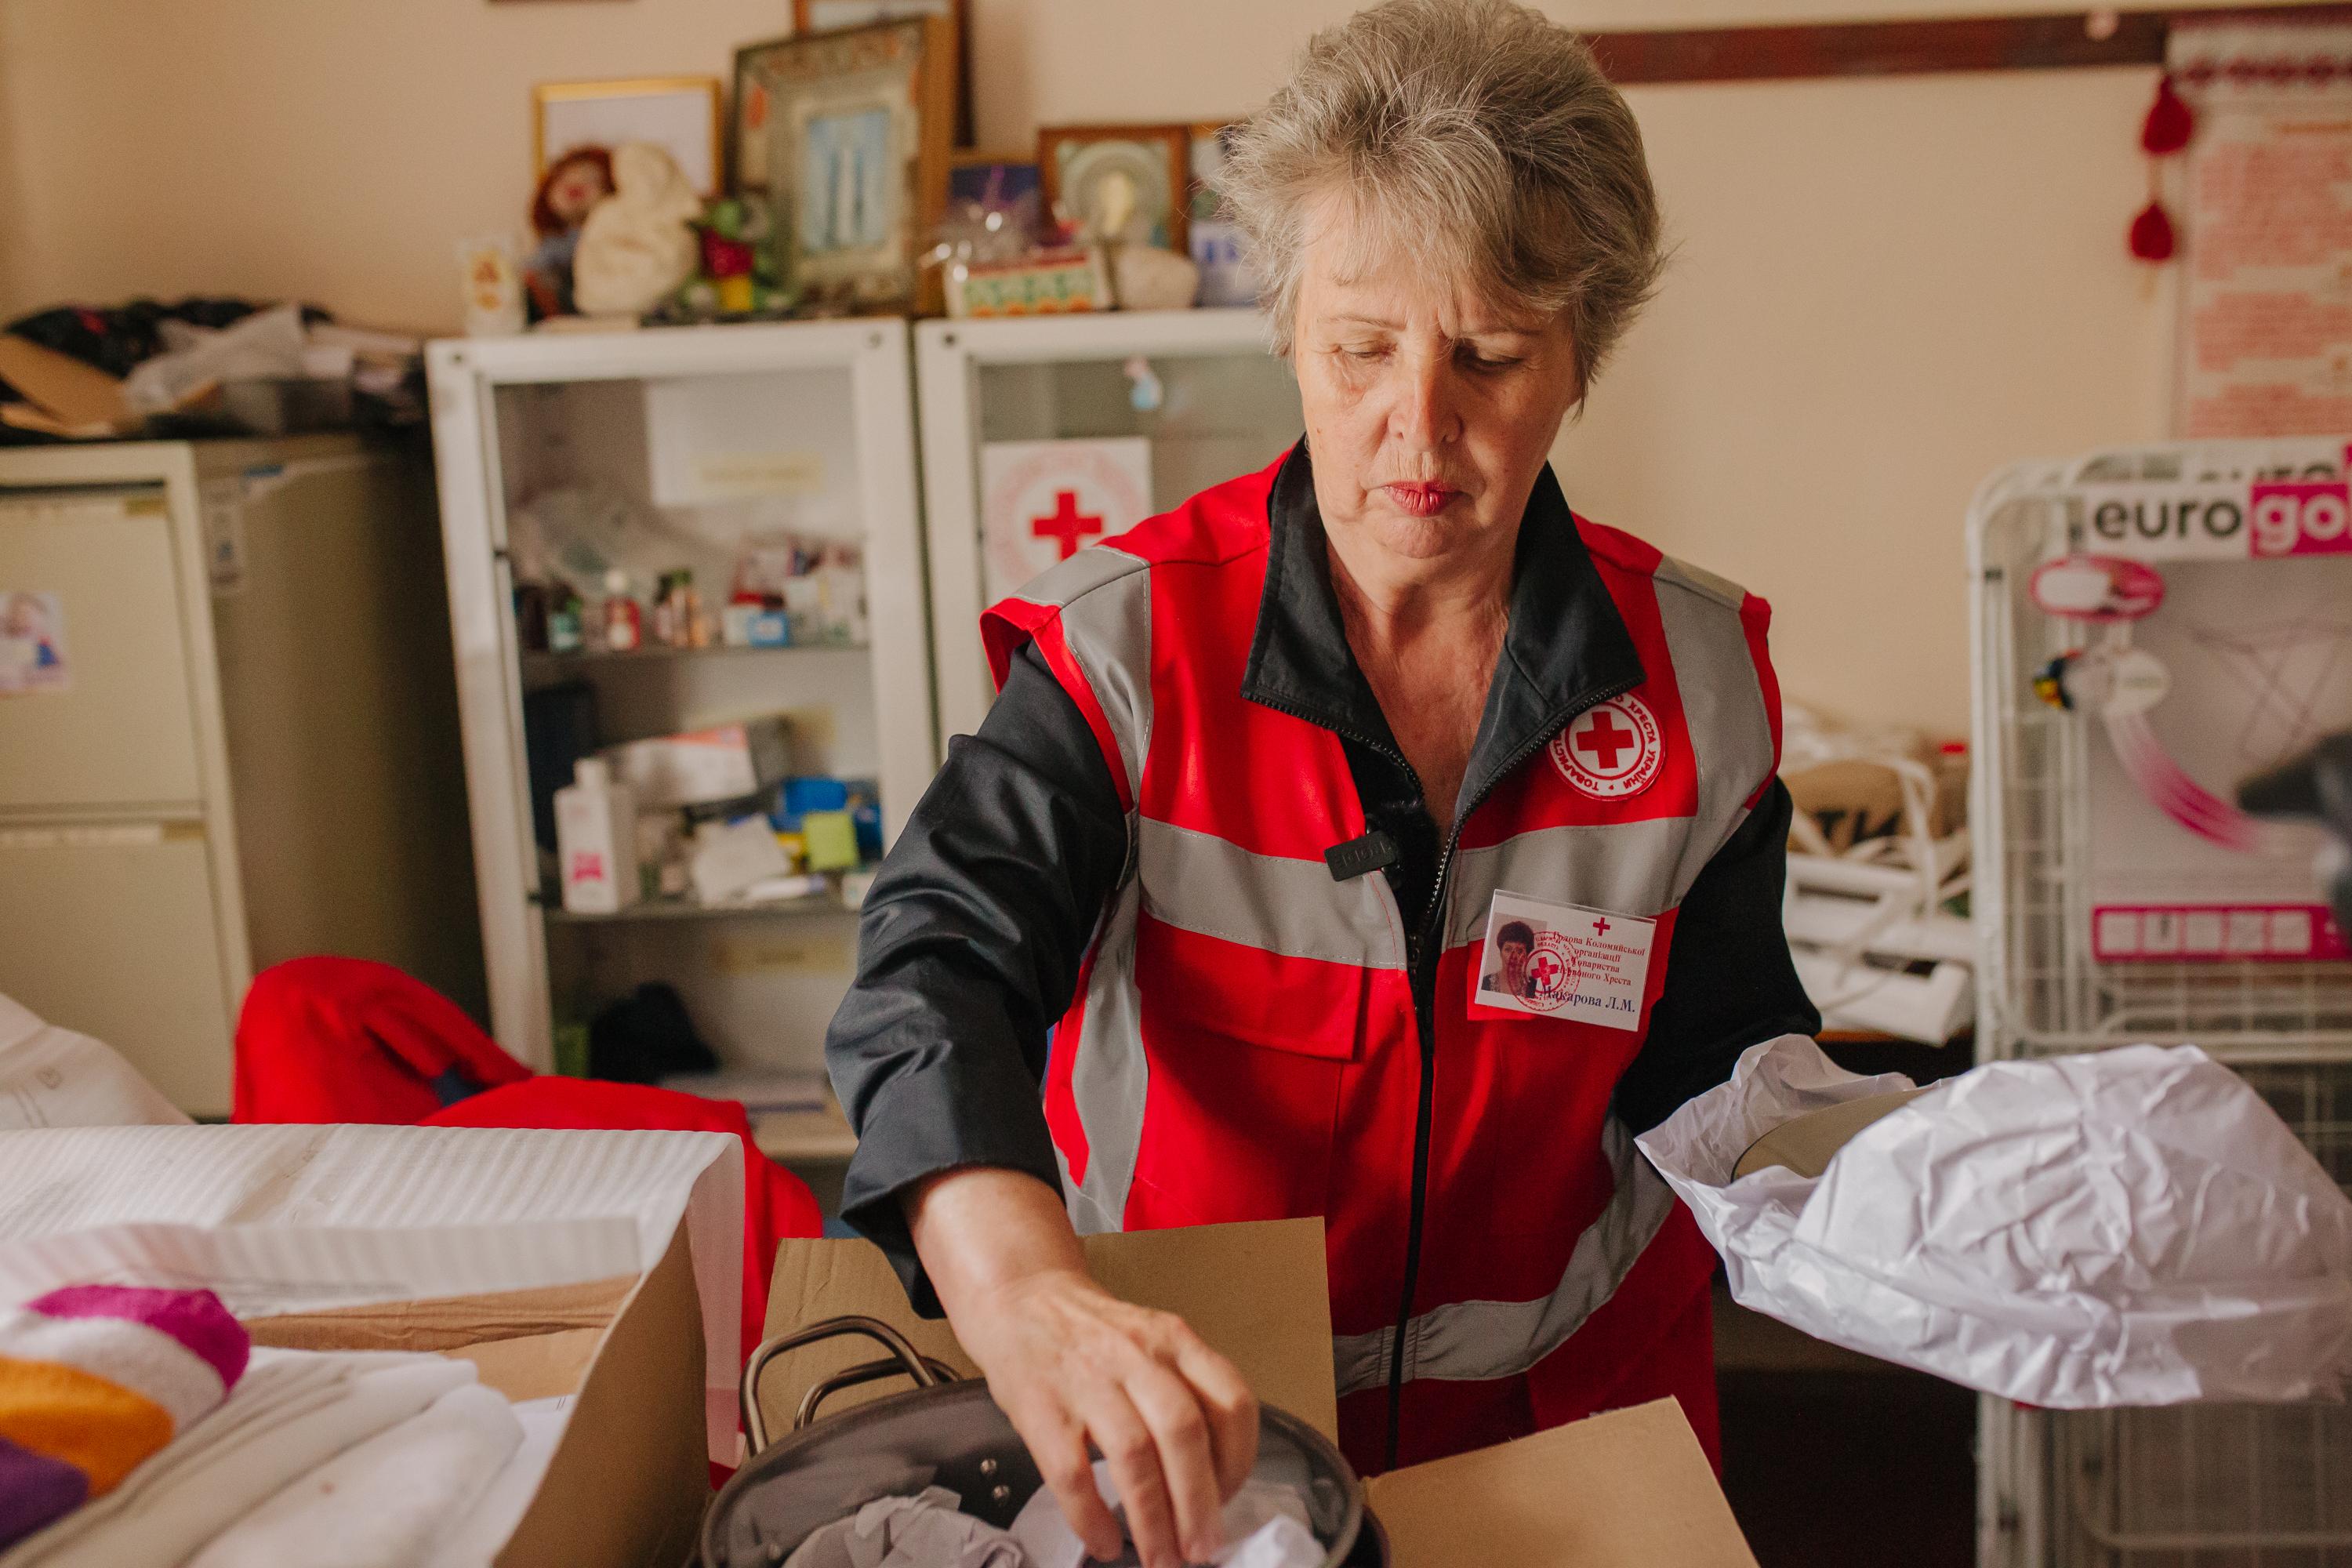 Une collaboratrice de la Croix-Rouge ukrainienne devant une pharmacie familiale. Elle semble préparer un sac contenant le matériel nécessaire.